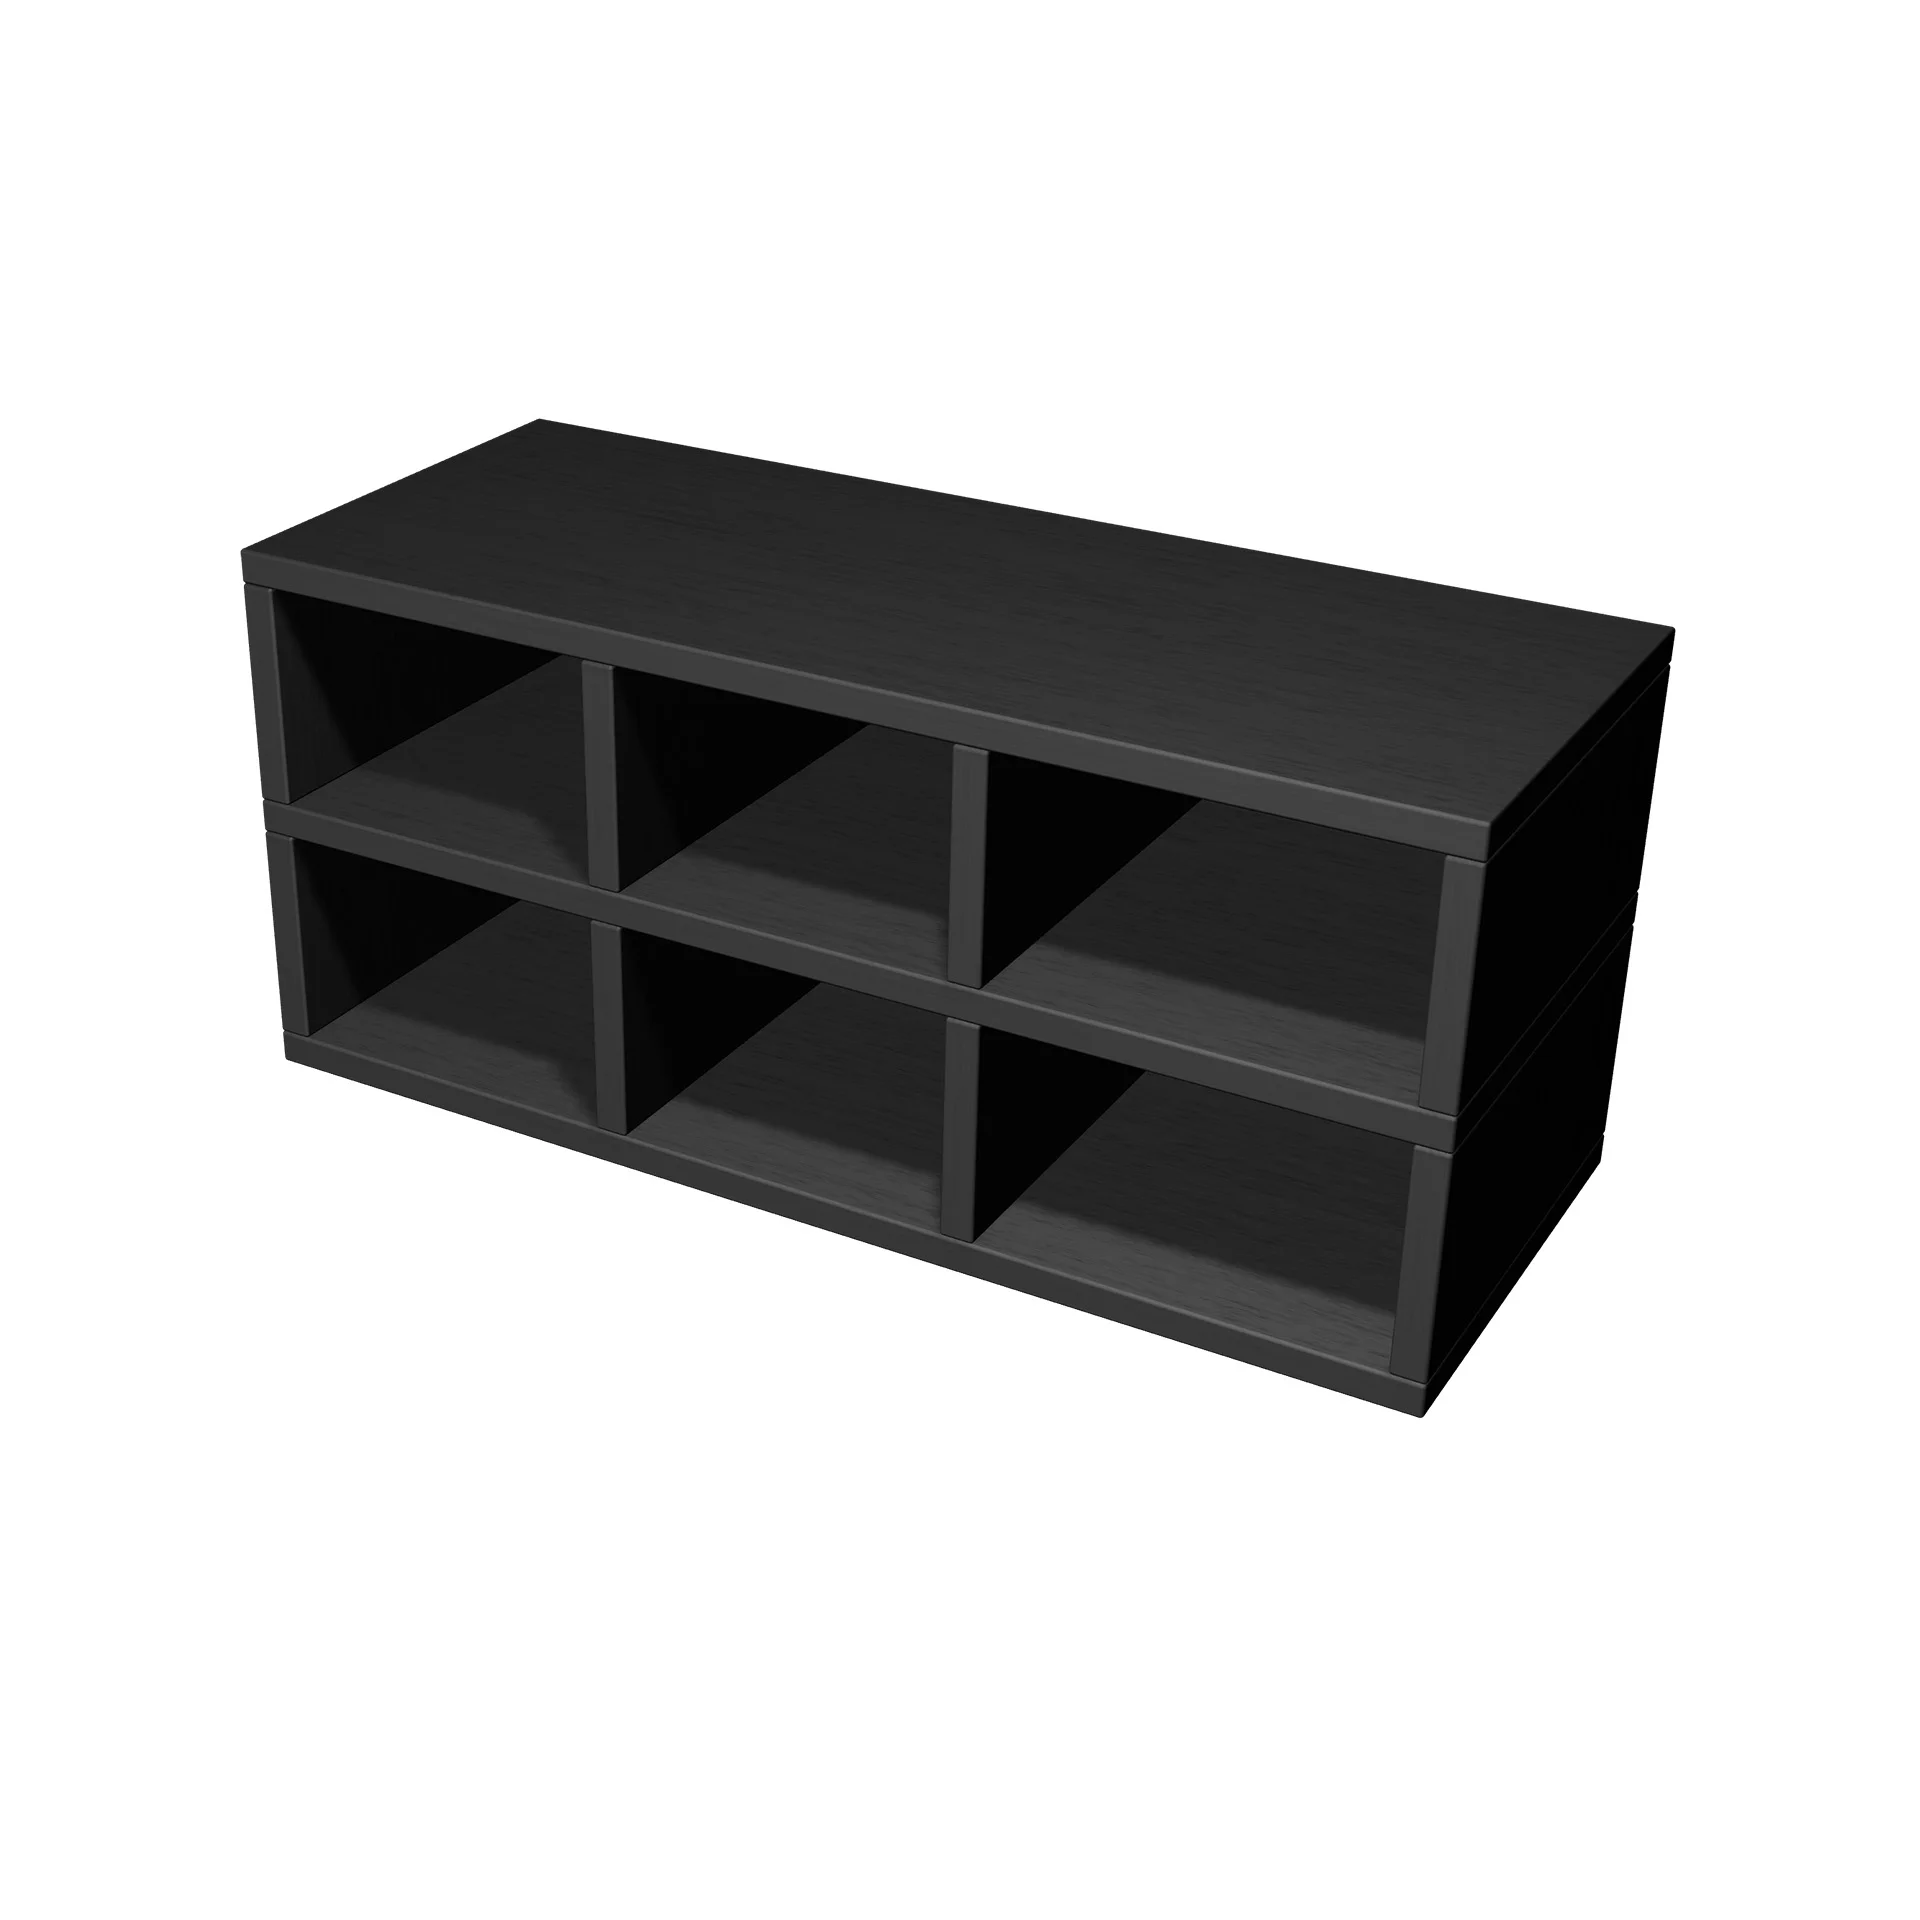 TSFC034 en panneau de meubles en chêne noir